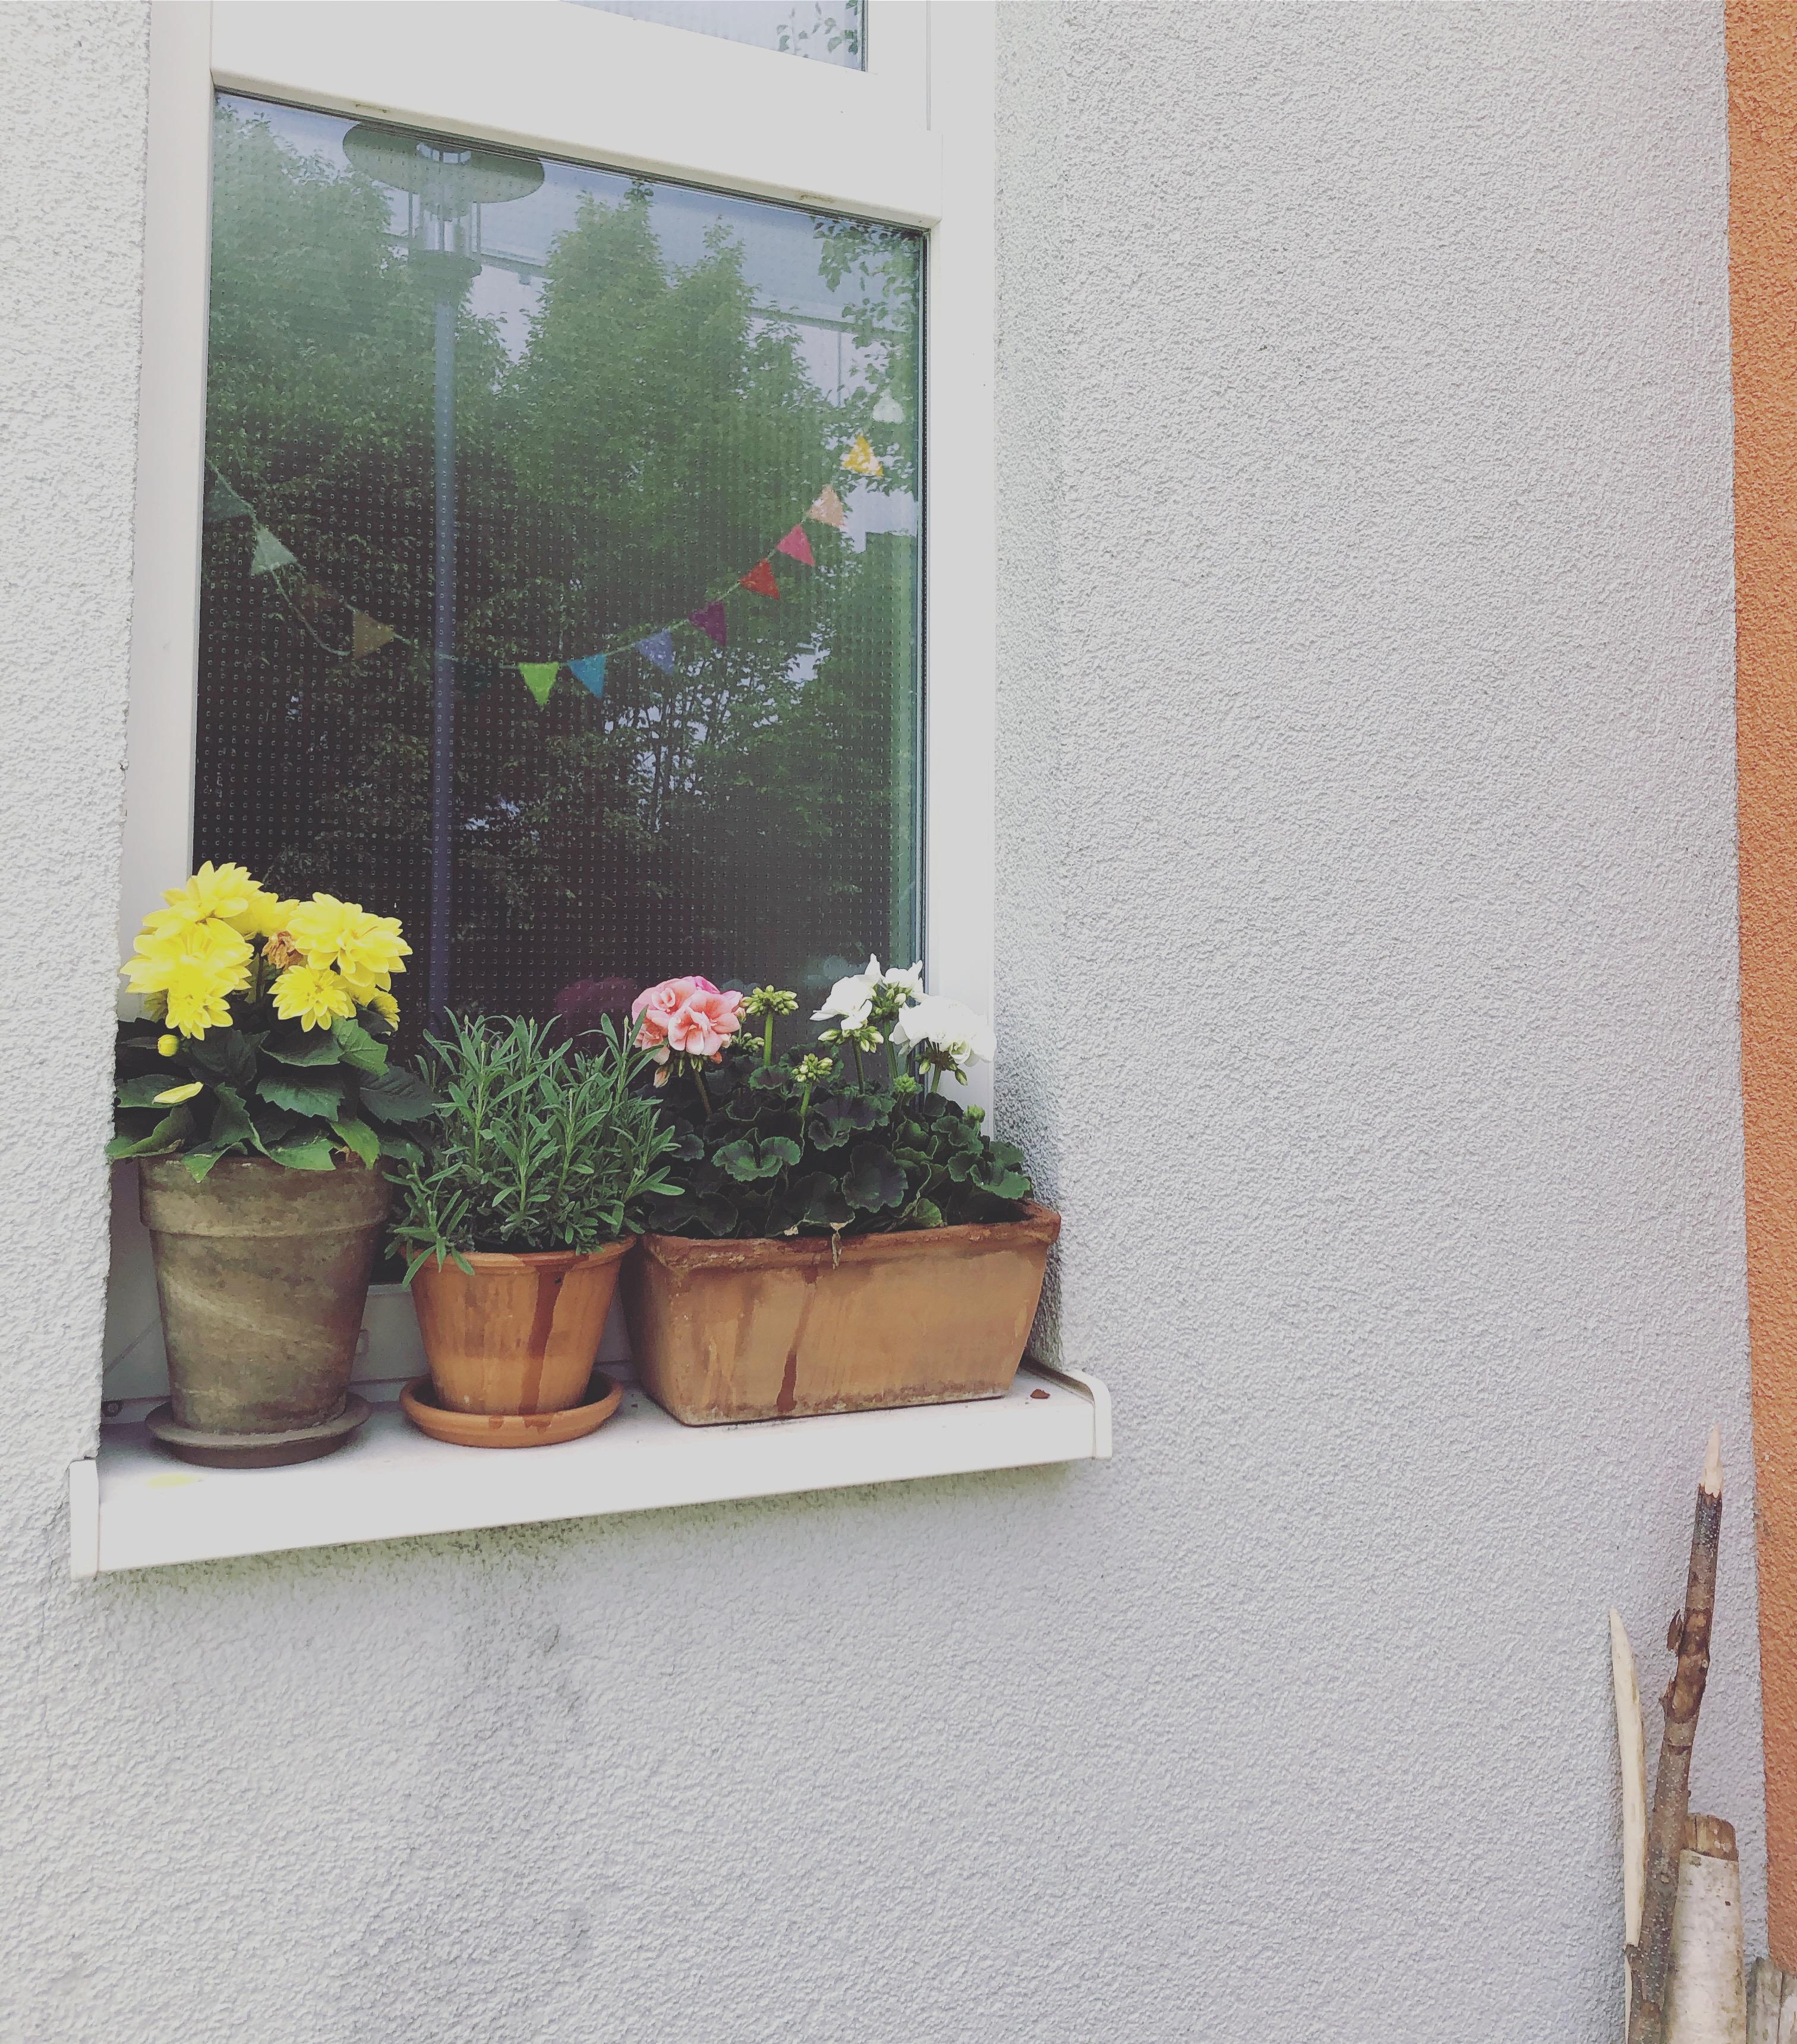 Fensterblümchen ❤️
#outdoor #livingchallenge